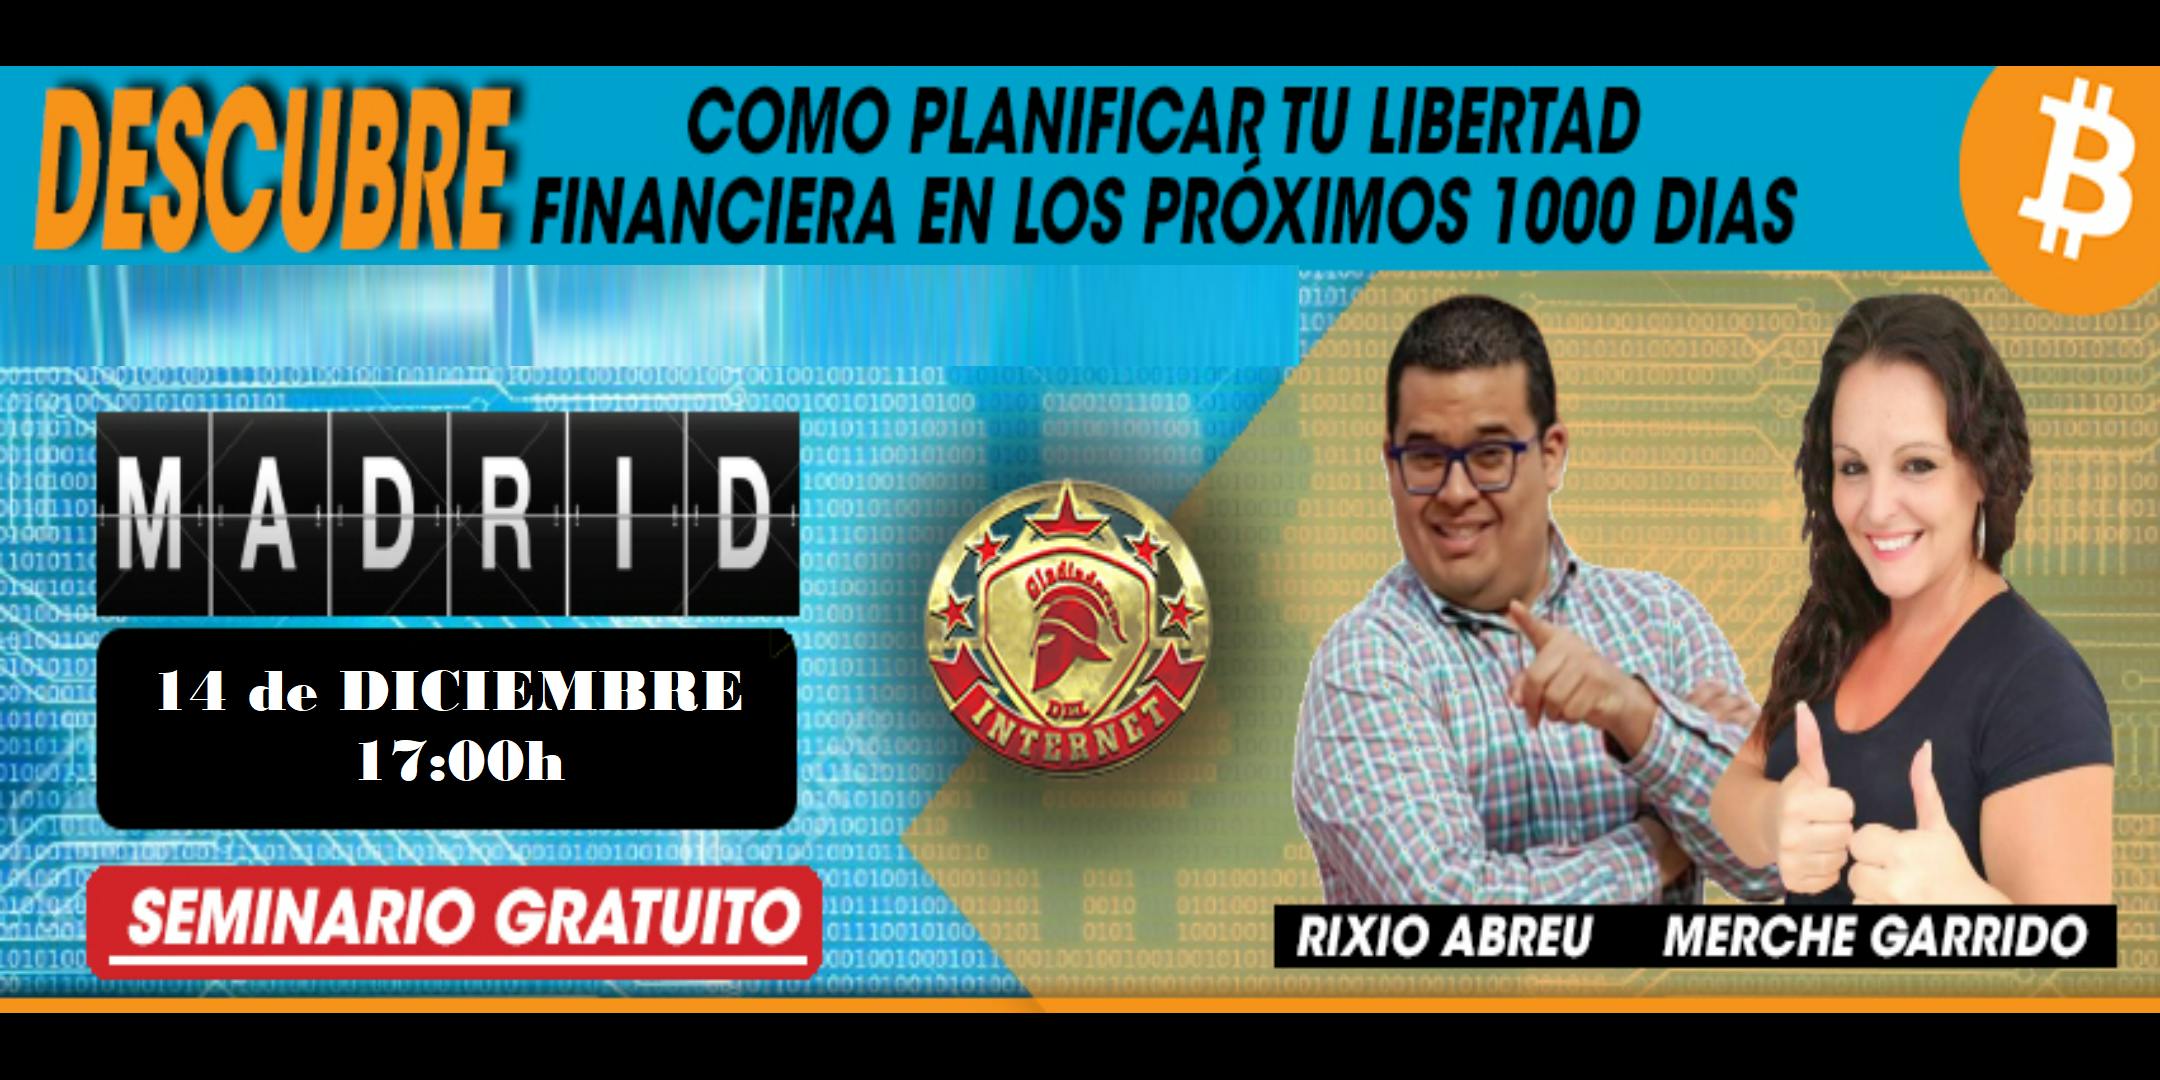 Descubre Cómo Planificar Tu Libertad Financiera En Los Proximos 1000 días (14 de Diciembre Madrid)